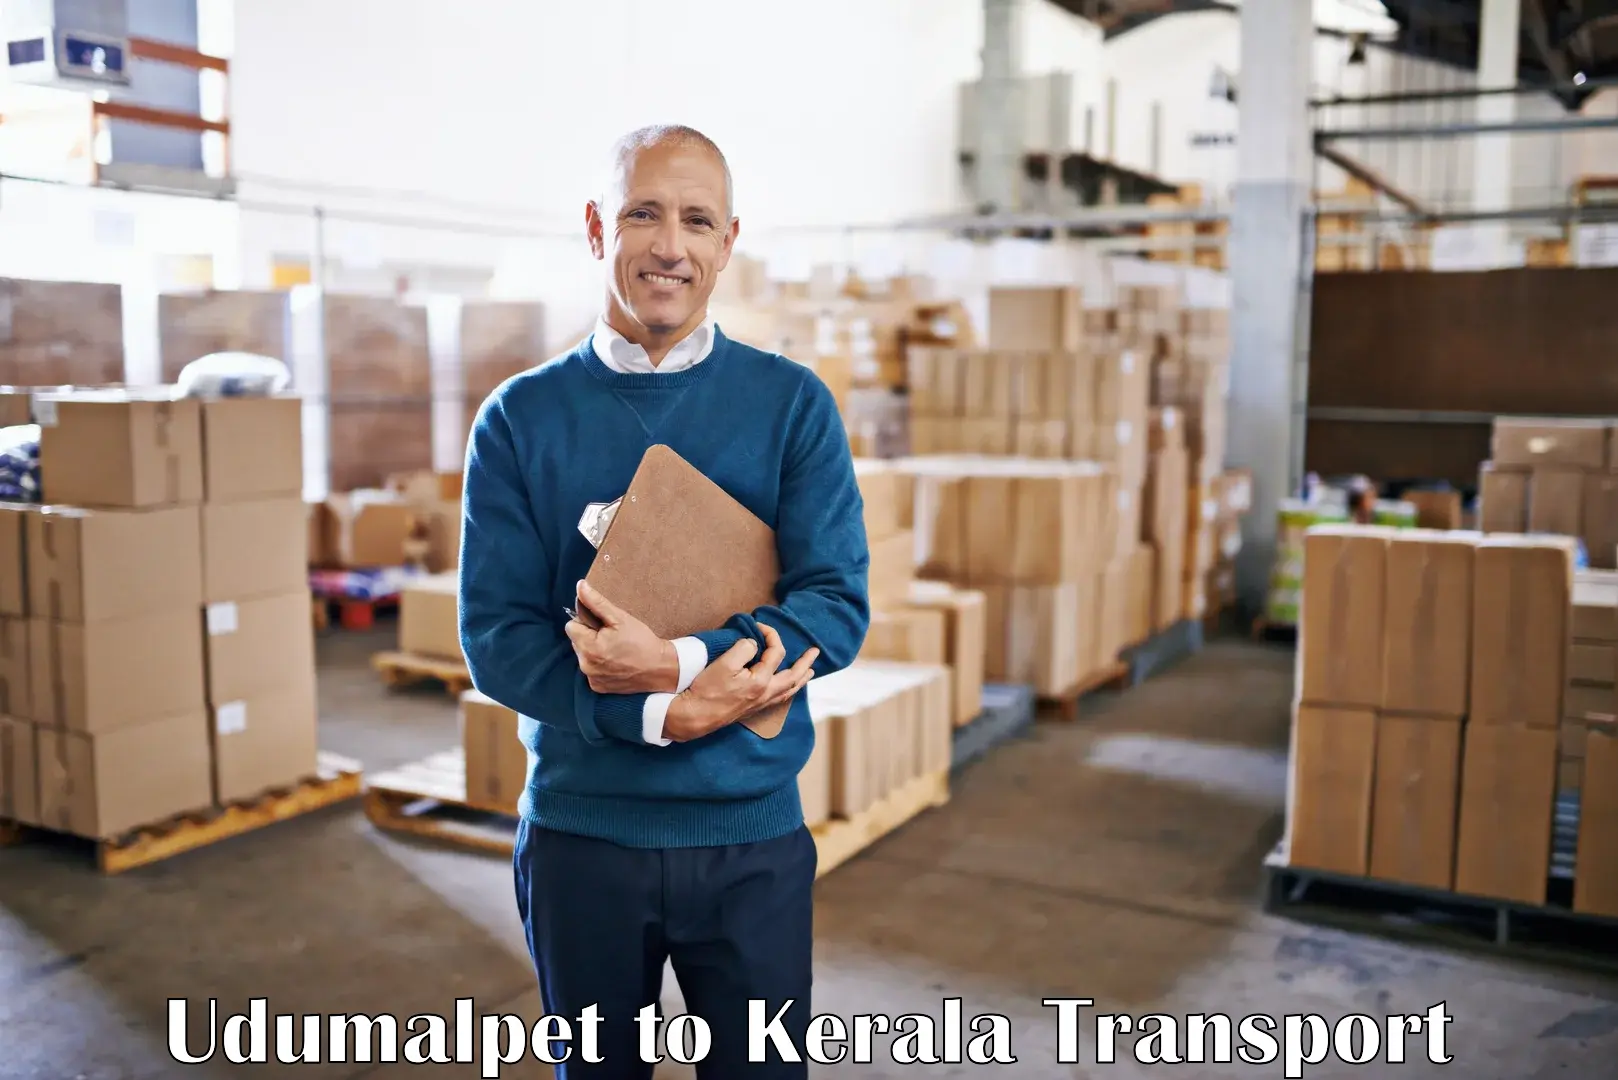 Shipping partner Udumalpet to Kerala